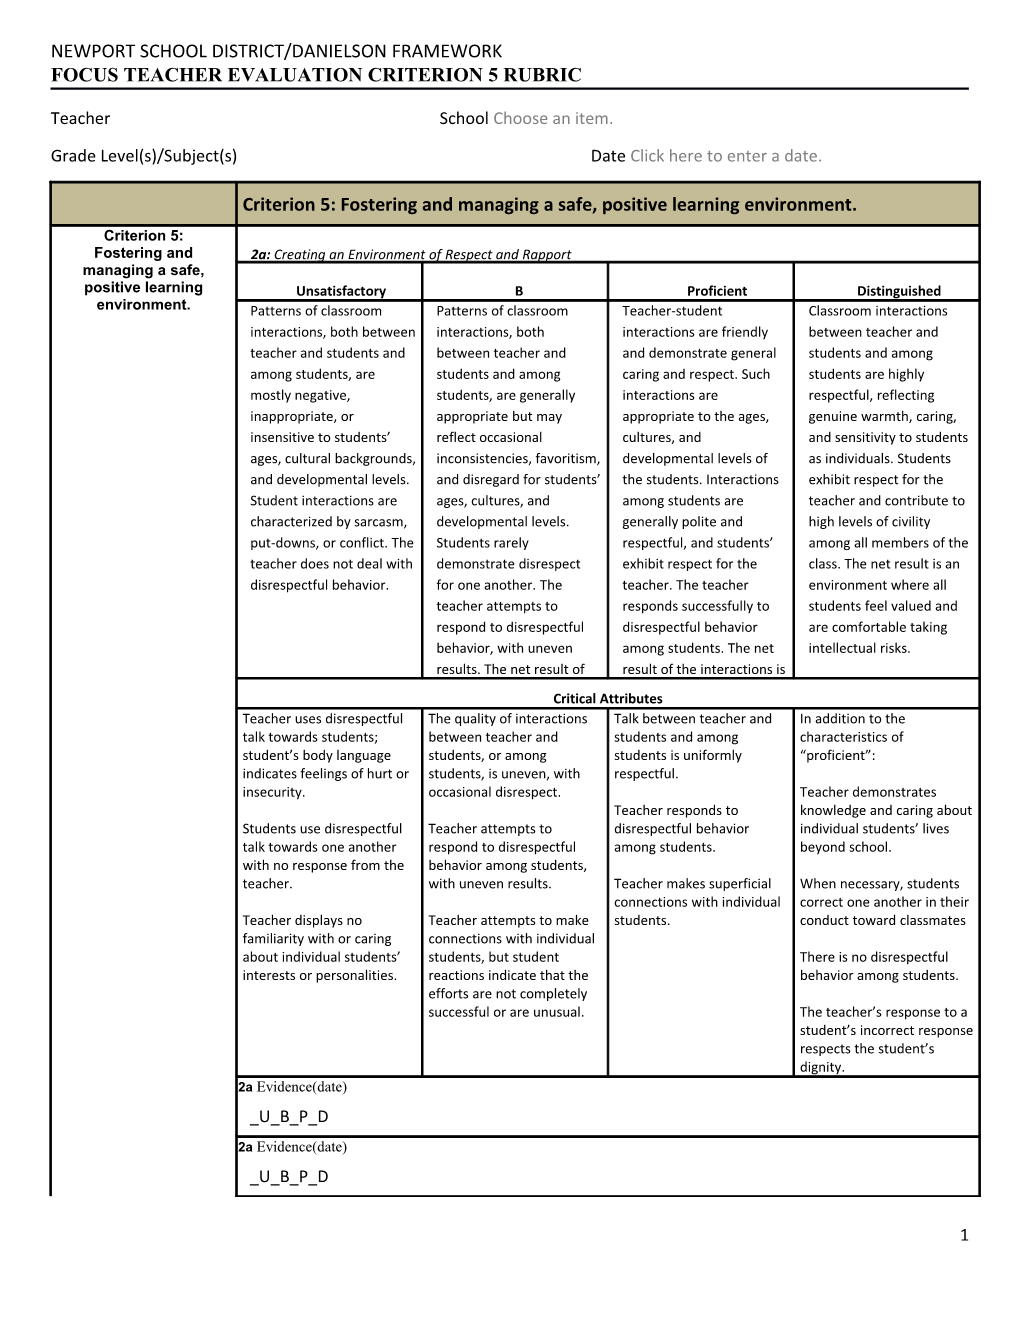 Focus Teacher Evaluation Criterion 5Rubric